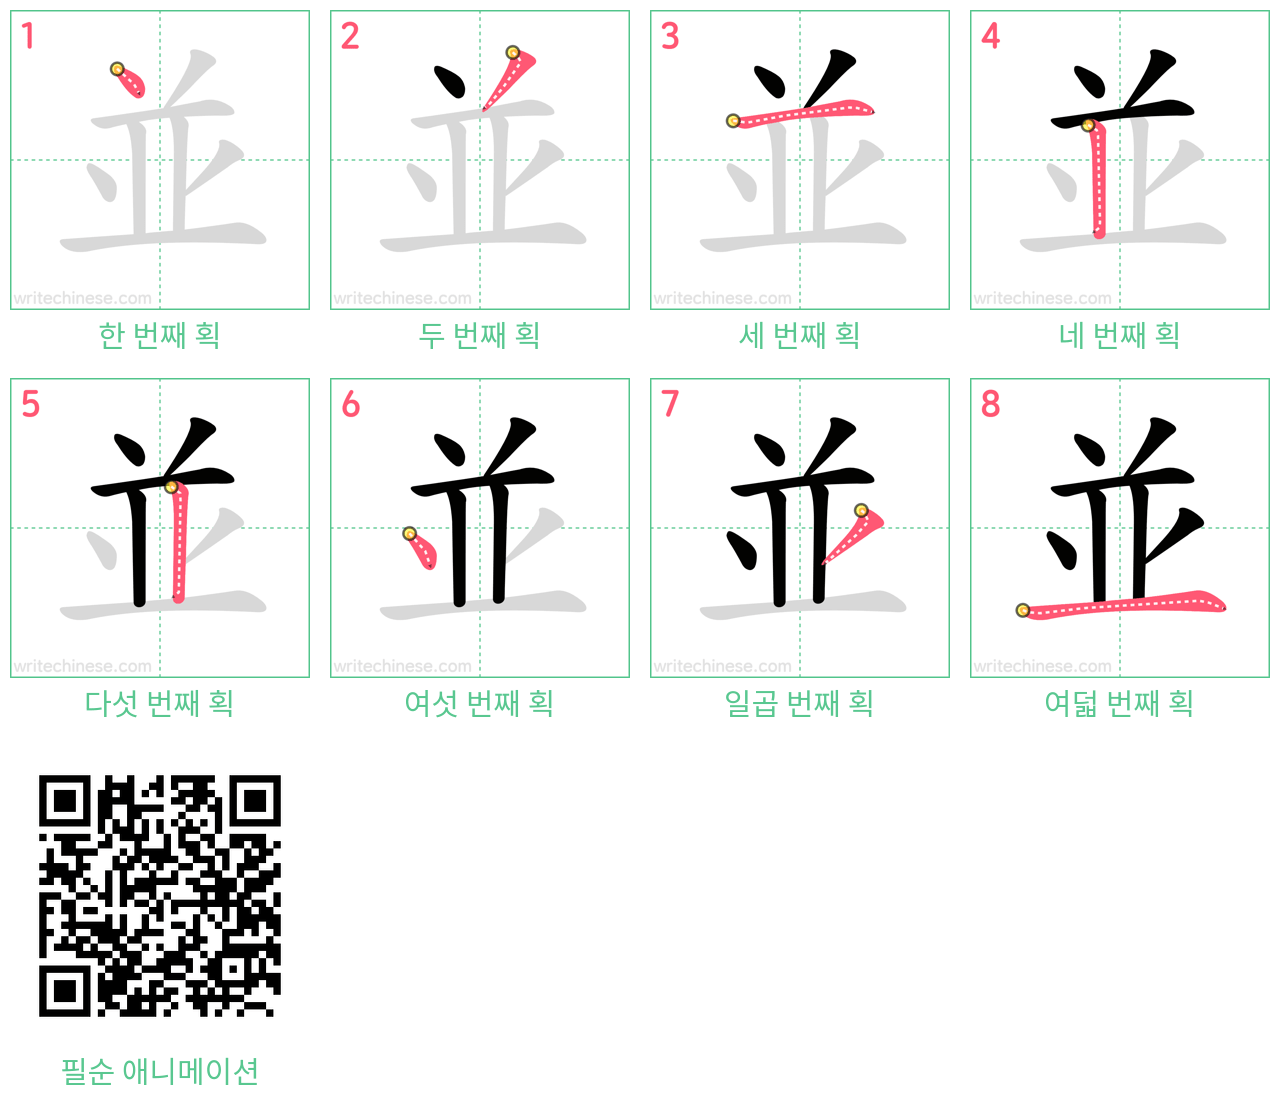 並 step-by-step stroke order diagrams